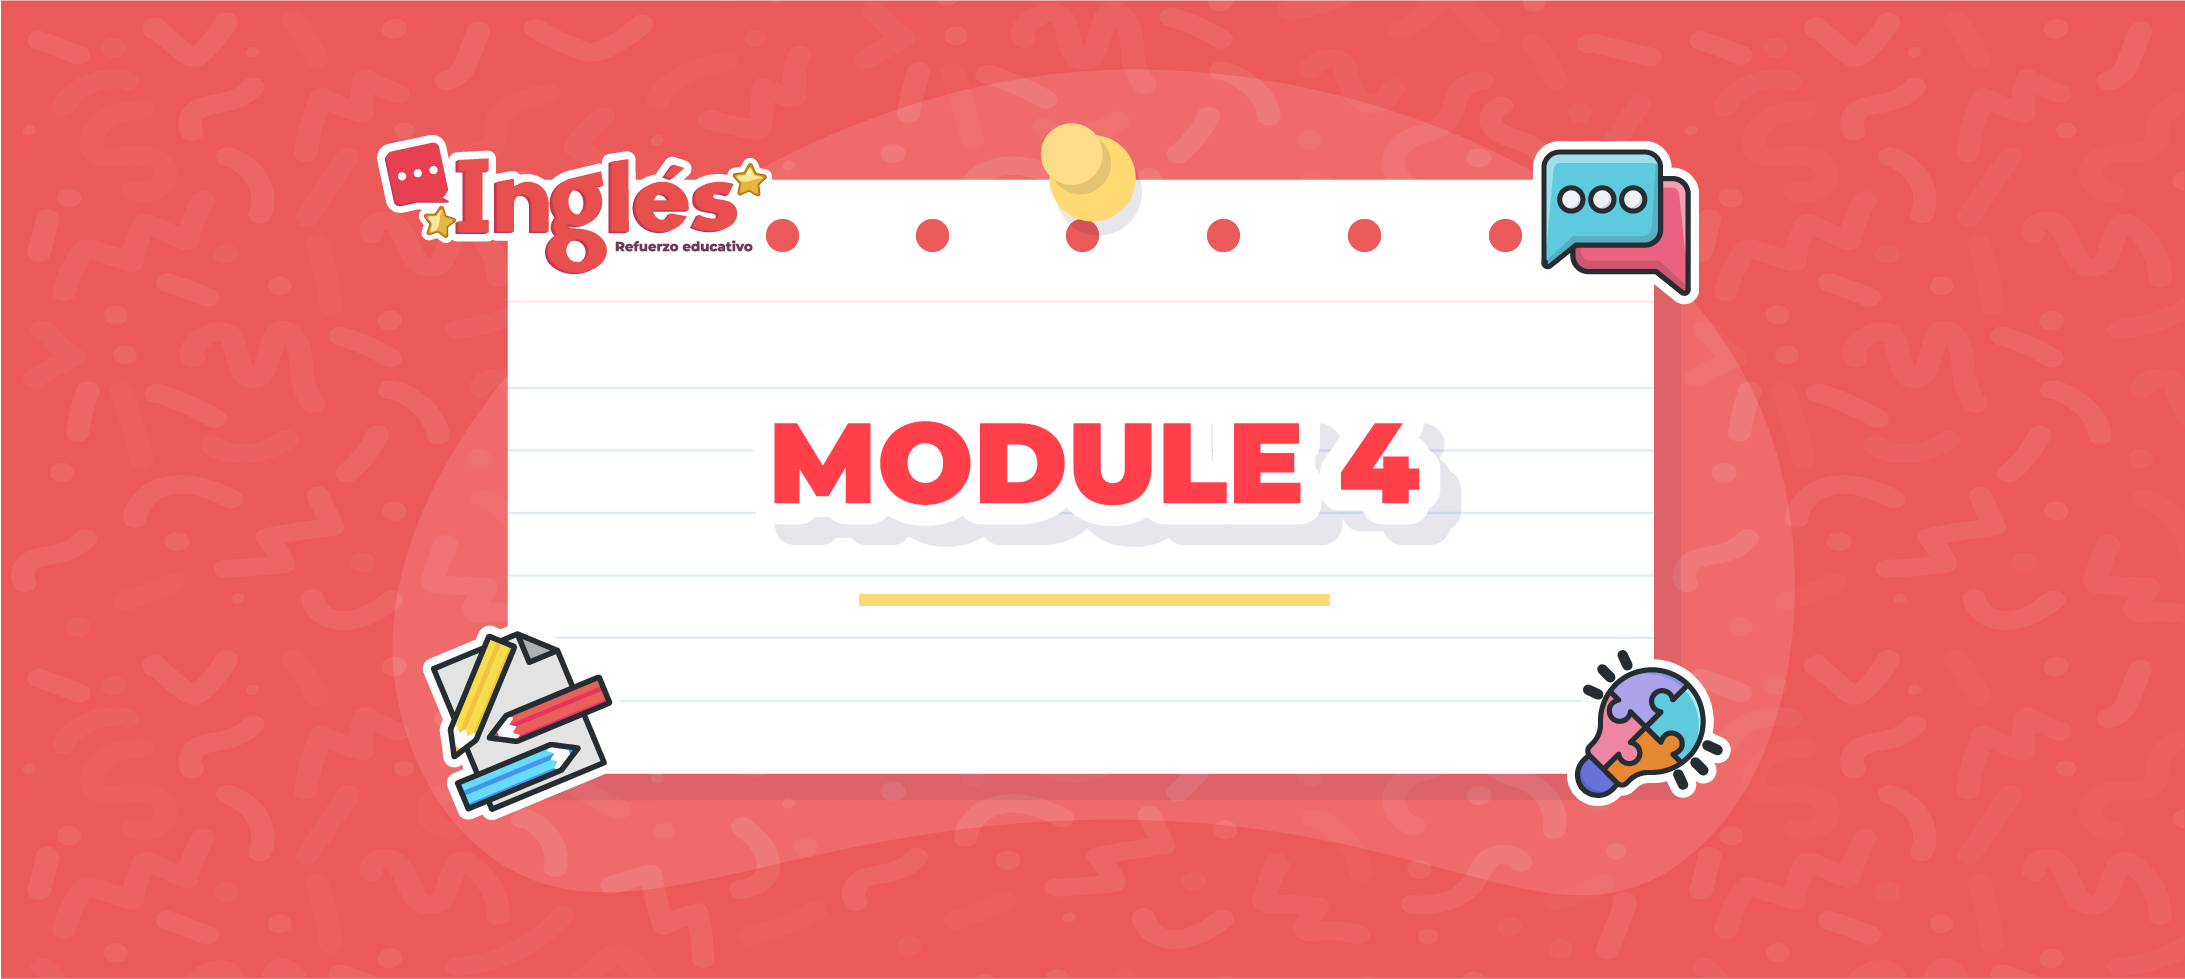 English: Module 4